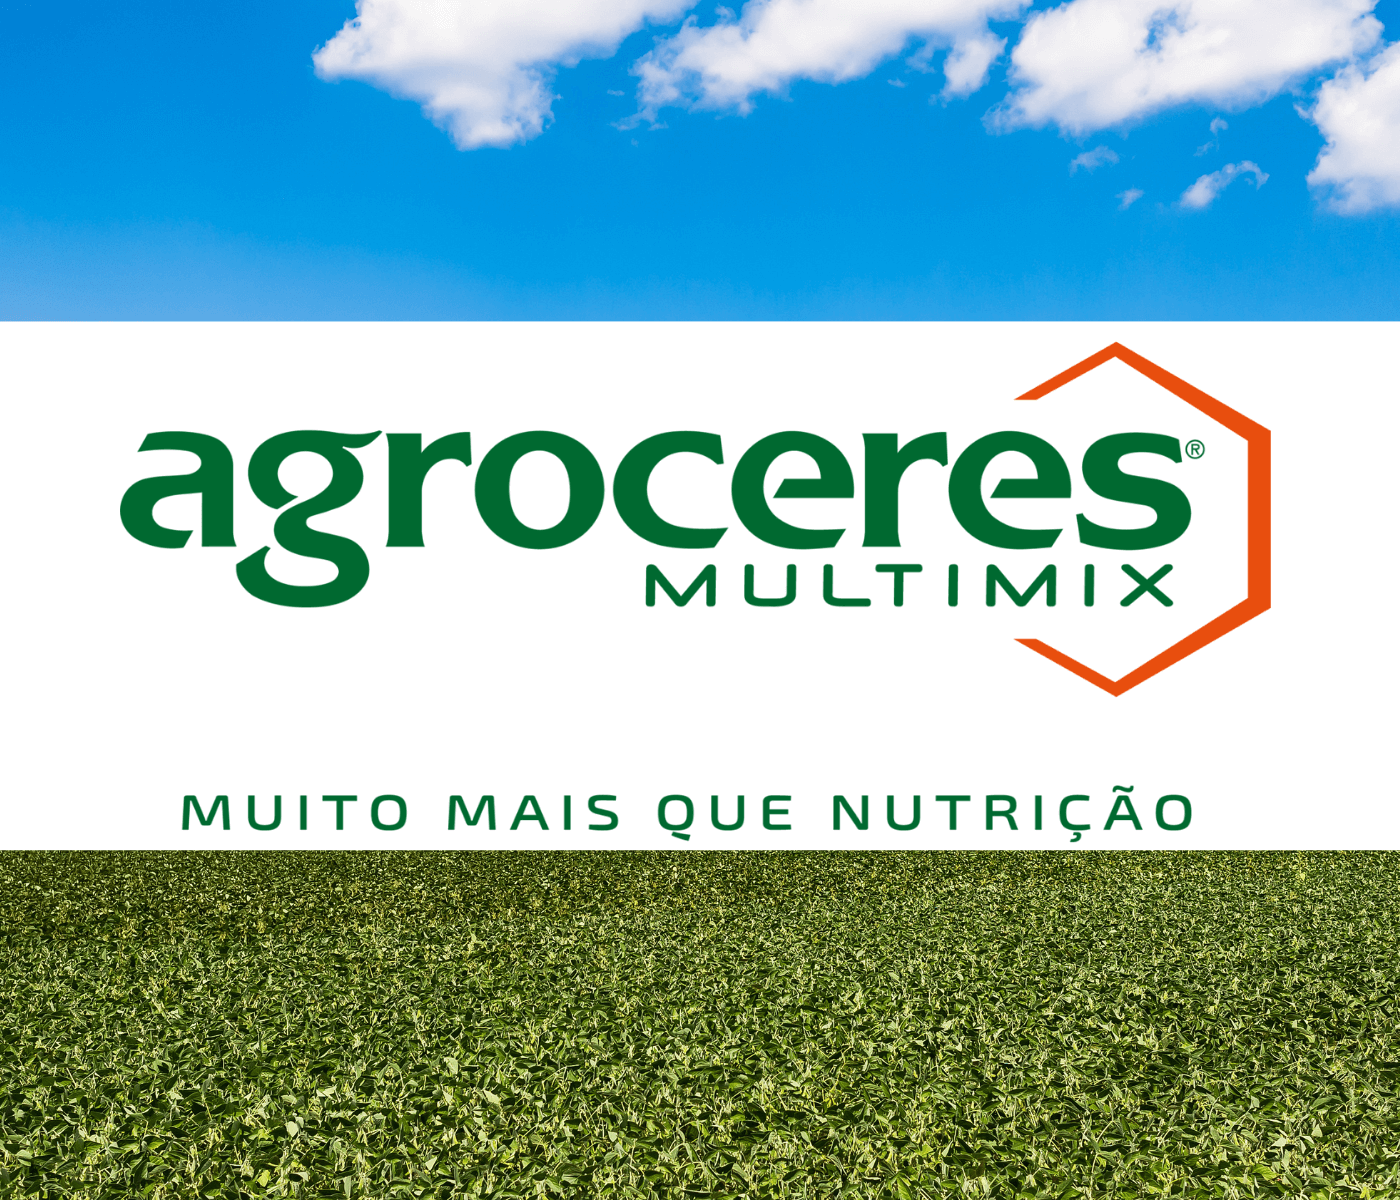 Agroceres Multimix apresenta sua estrutura de Pesquisa e Inovação, inédita no Brasil